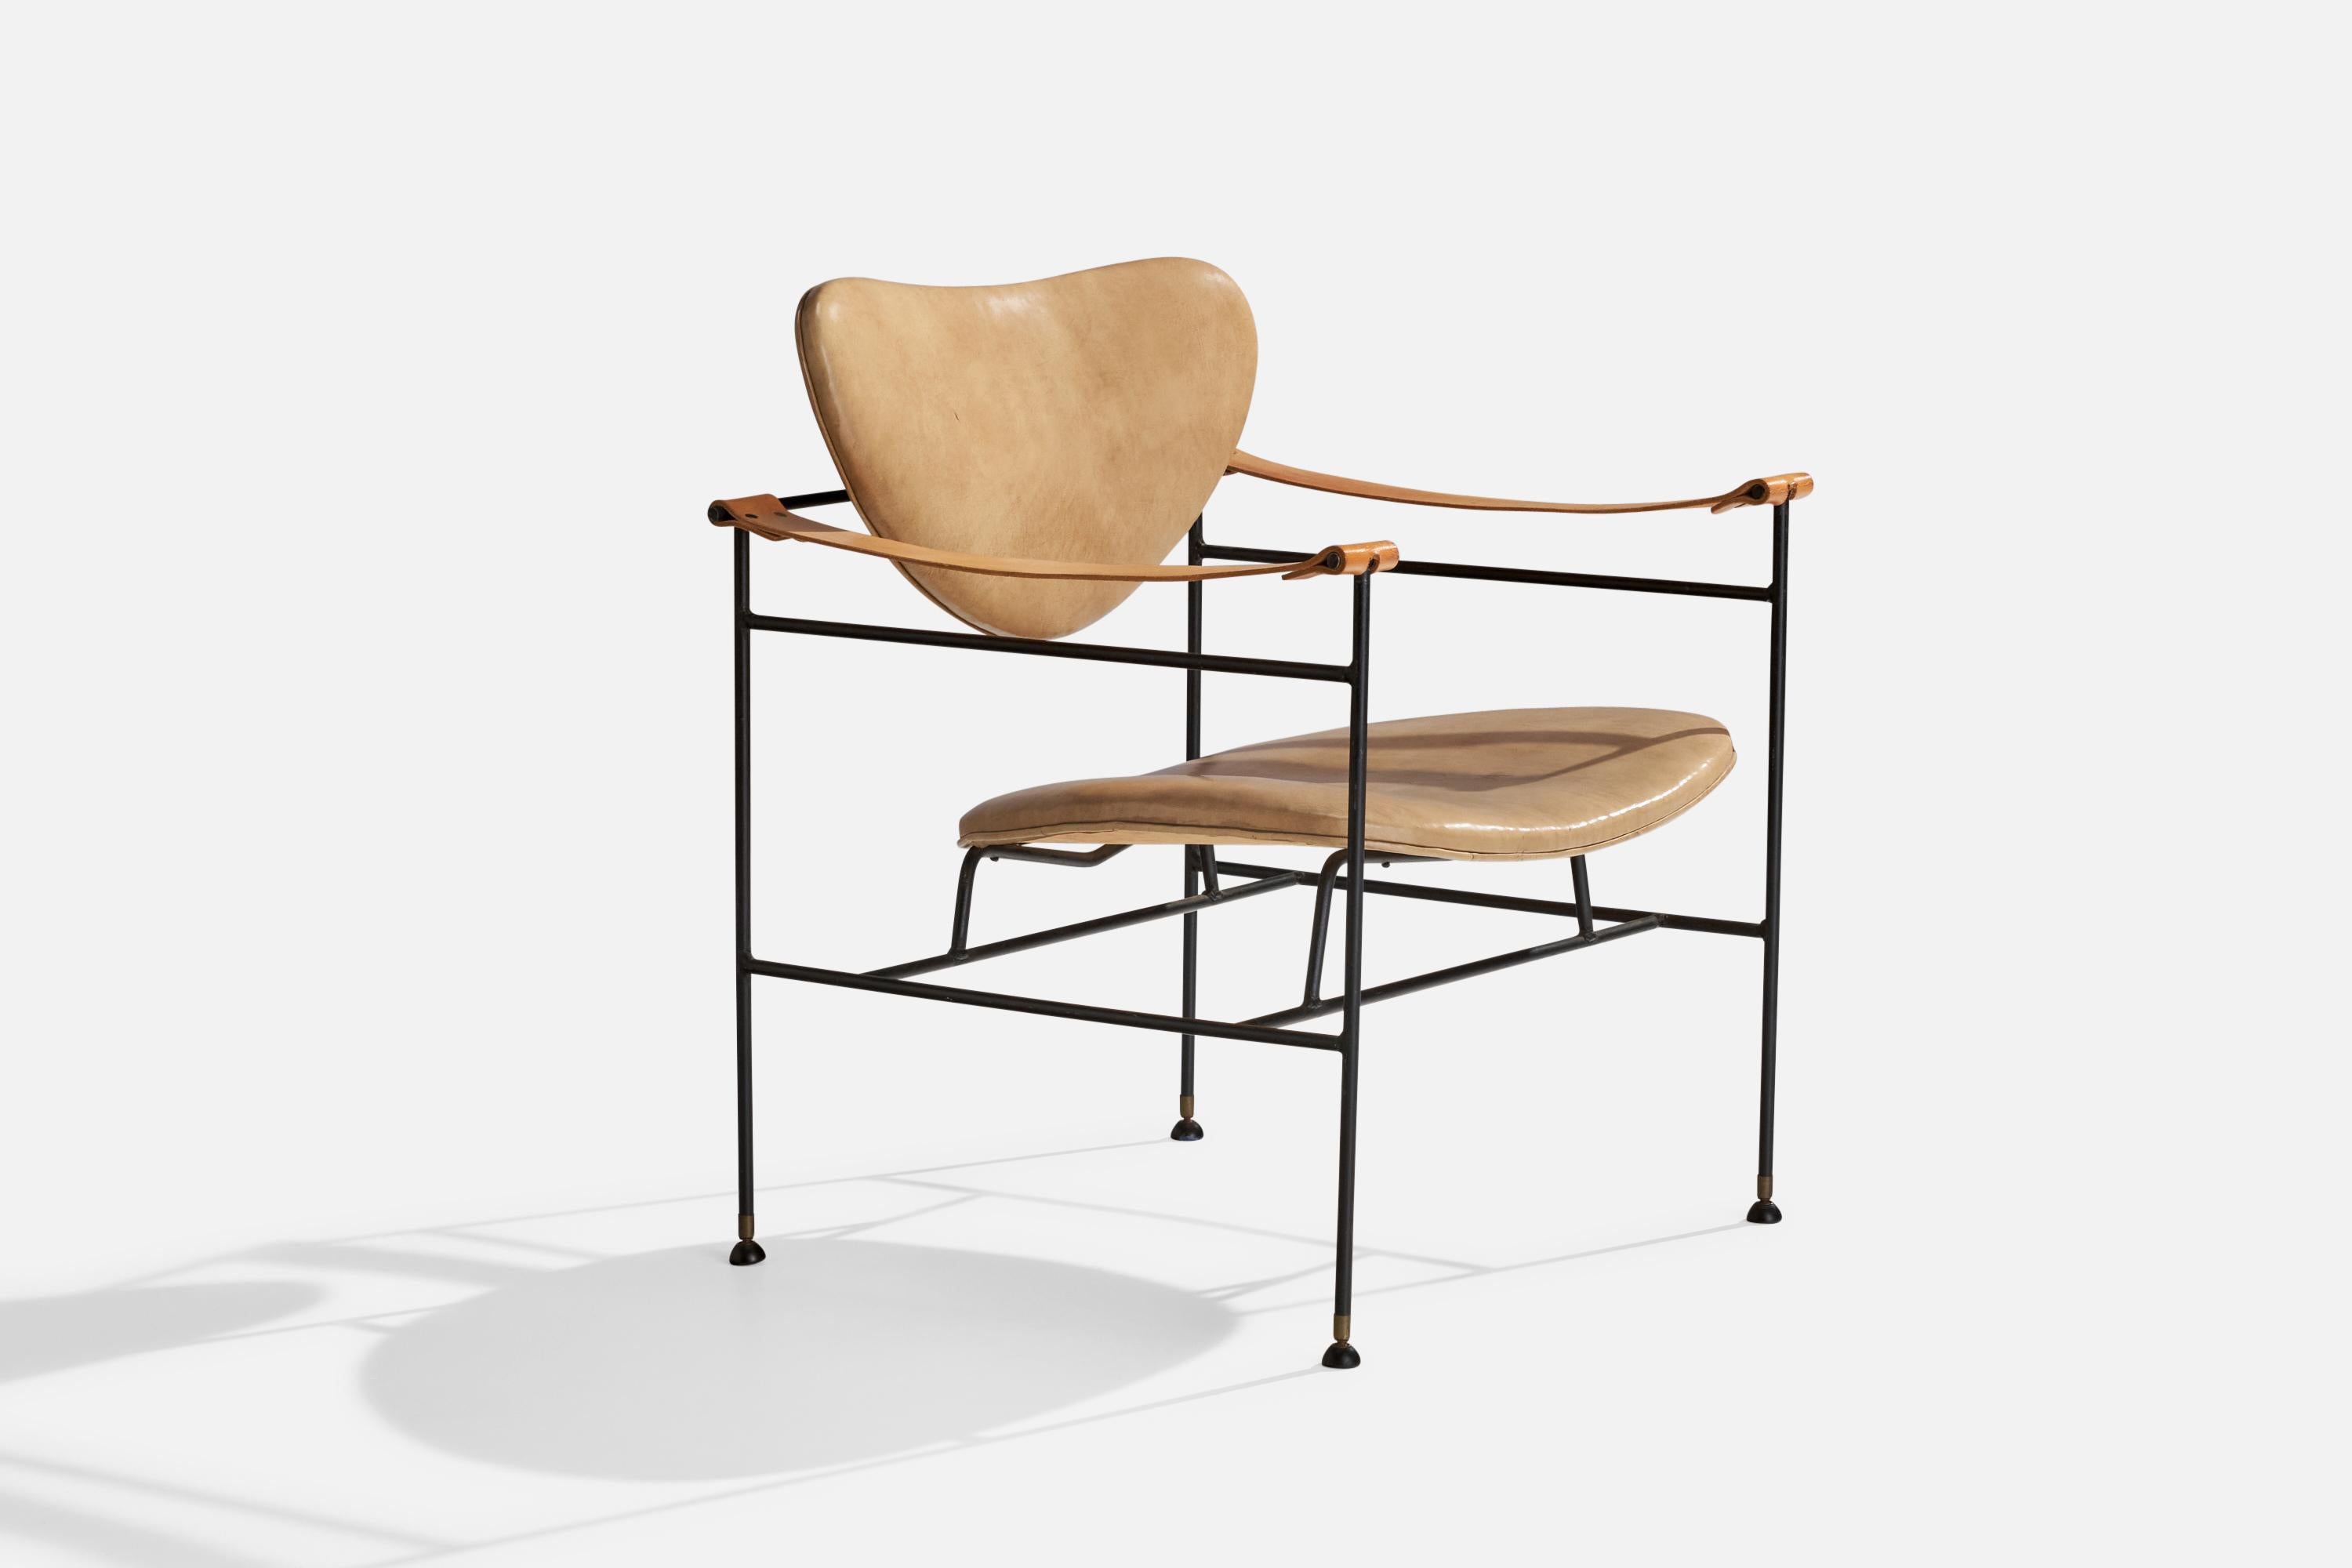 Sessel aus schwarz lackiertem Metall und beigem Leder, Reilly-Wolff & Associates, USA, um 1951.

Sitzhöhe 15